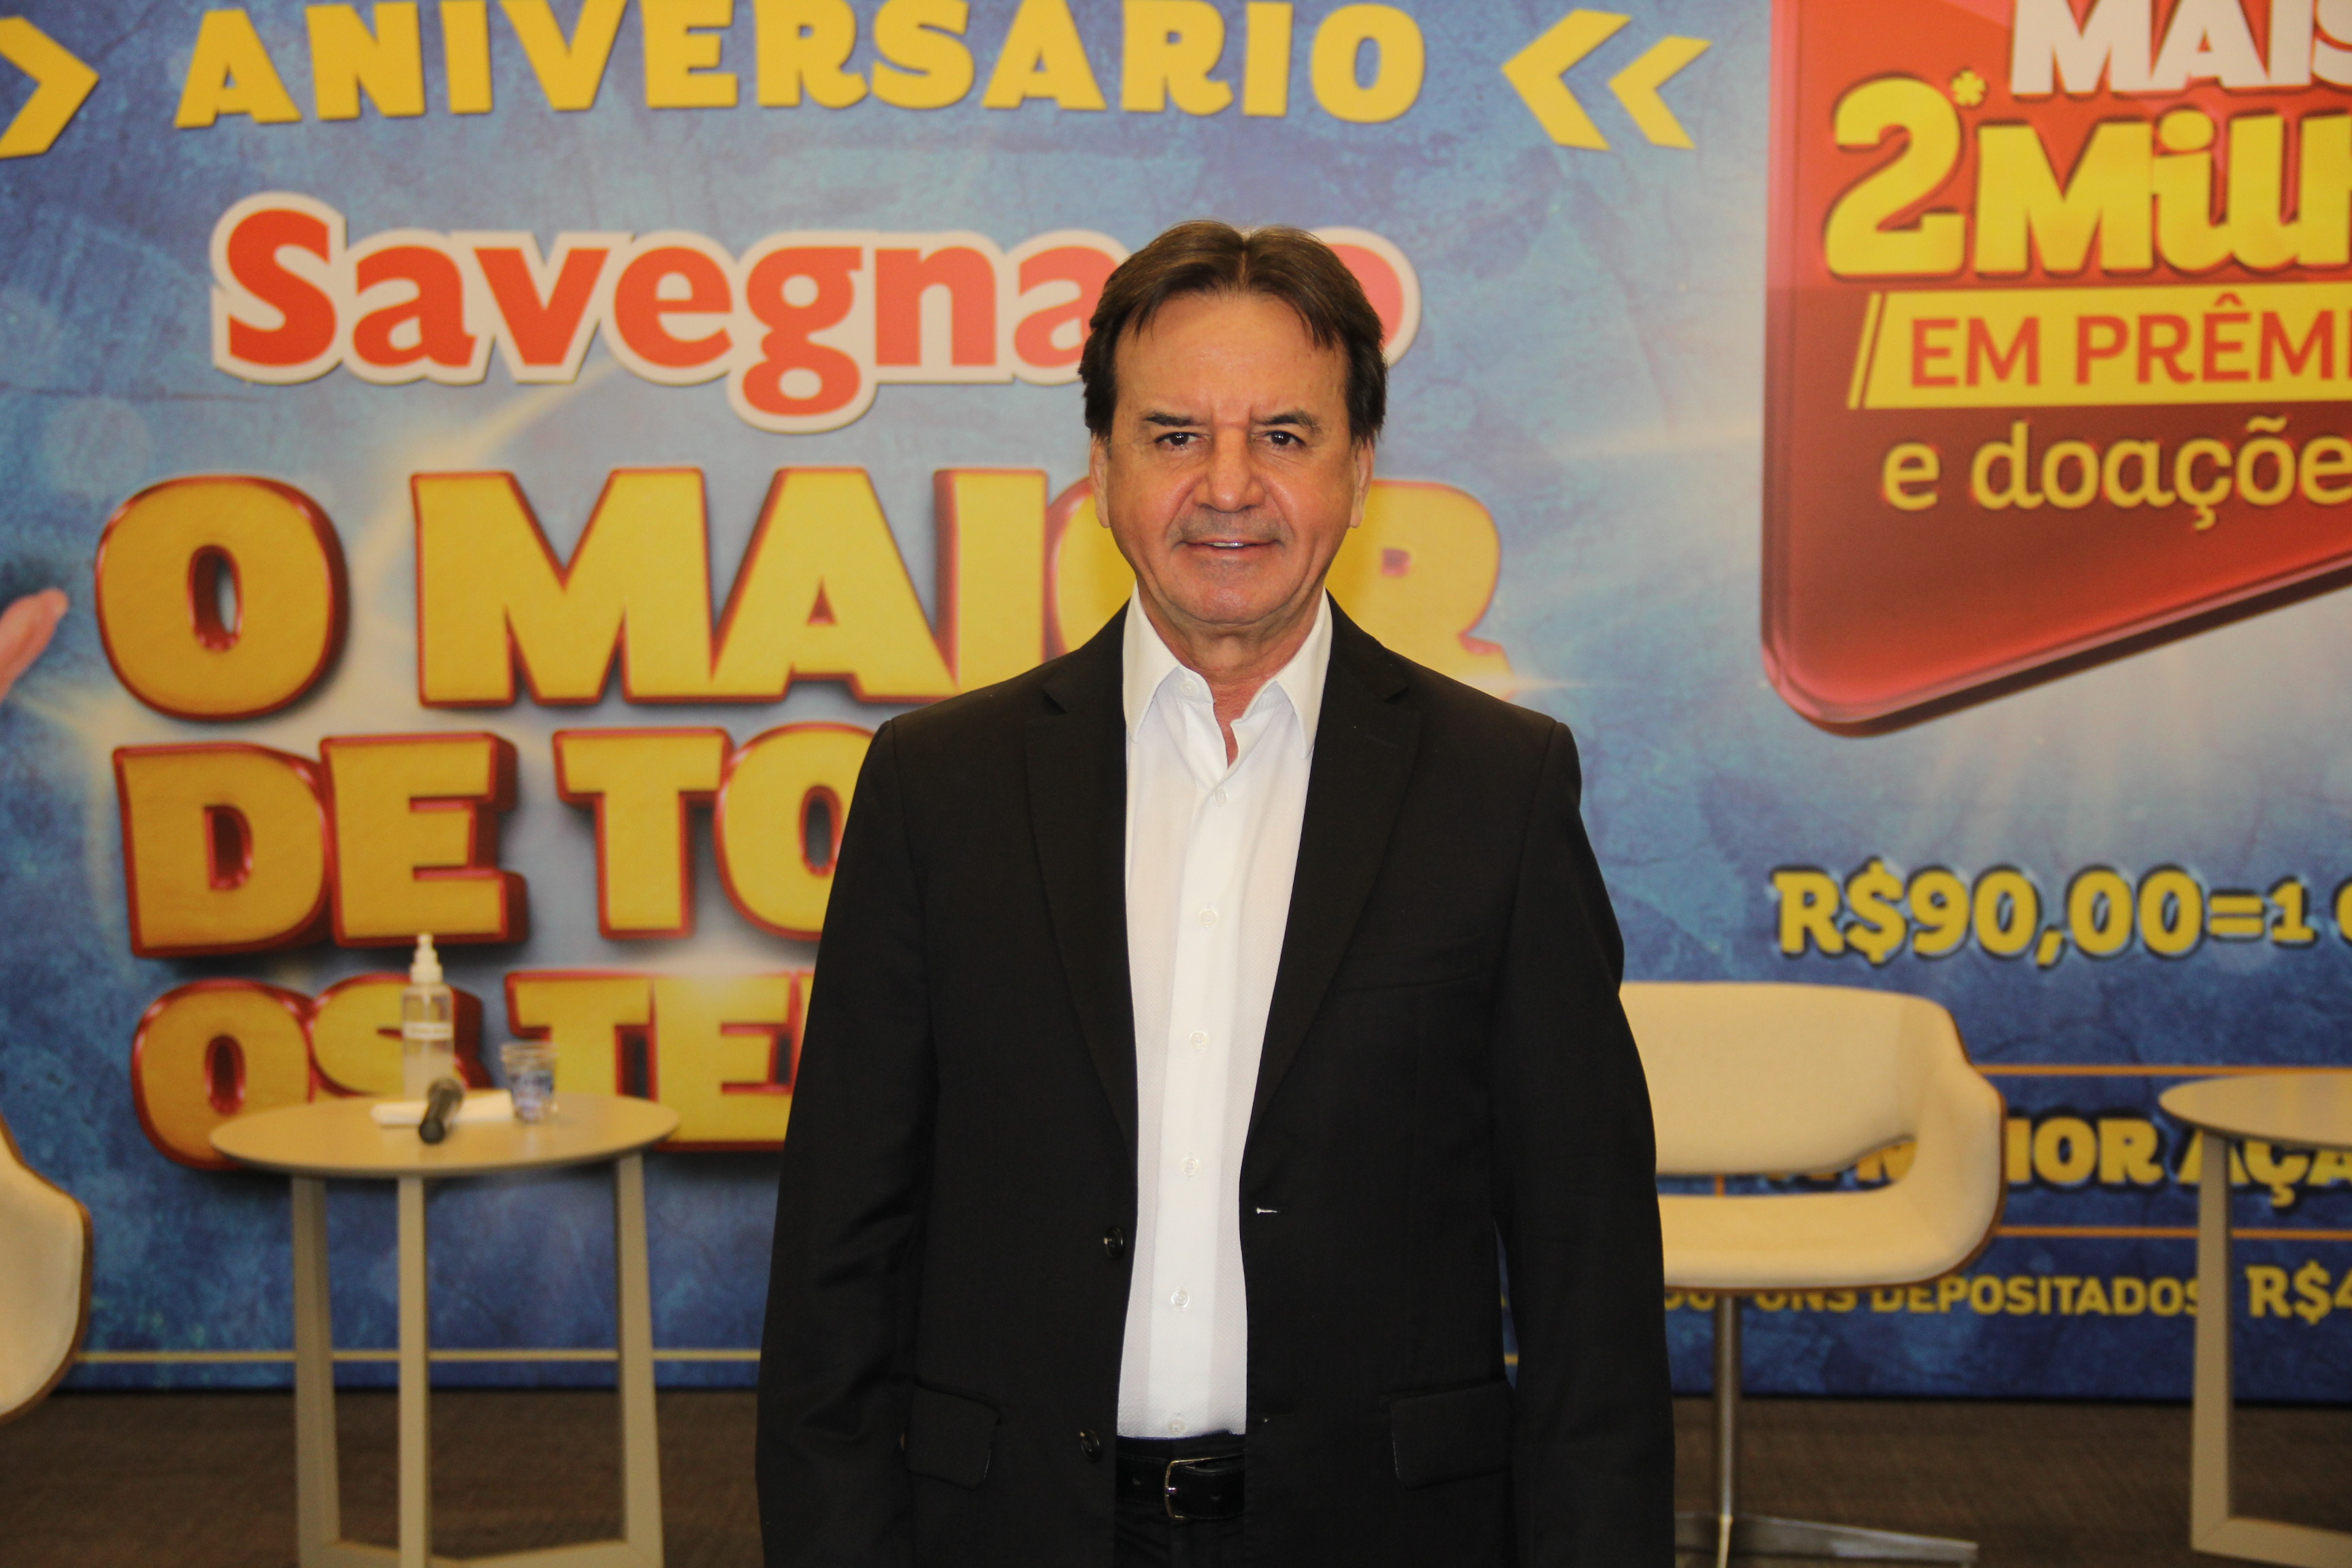 Presidente-executivo da rede, Chalim Savegnago